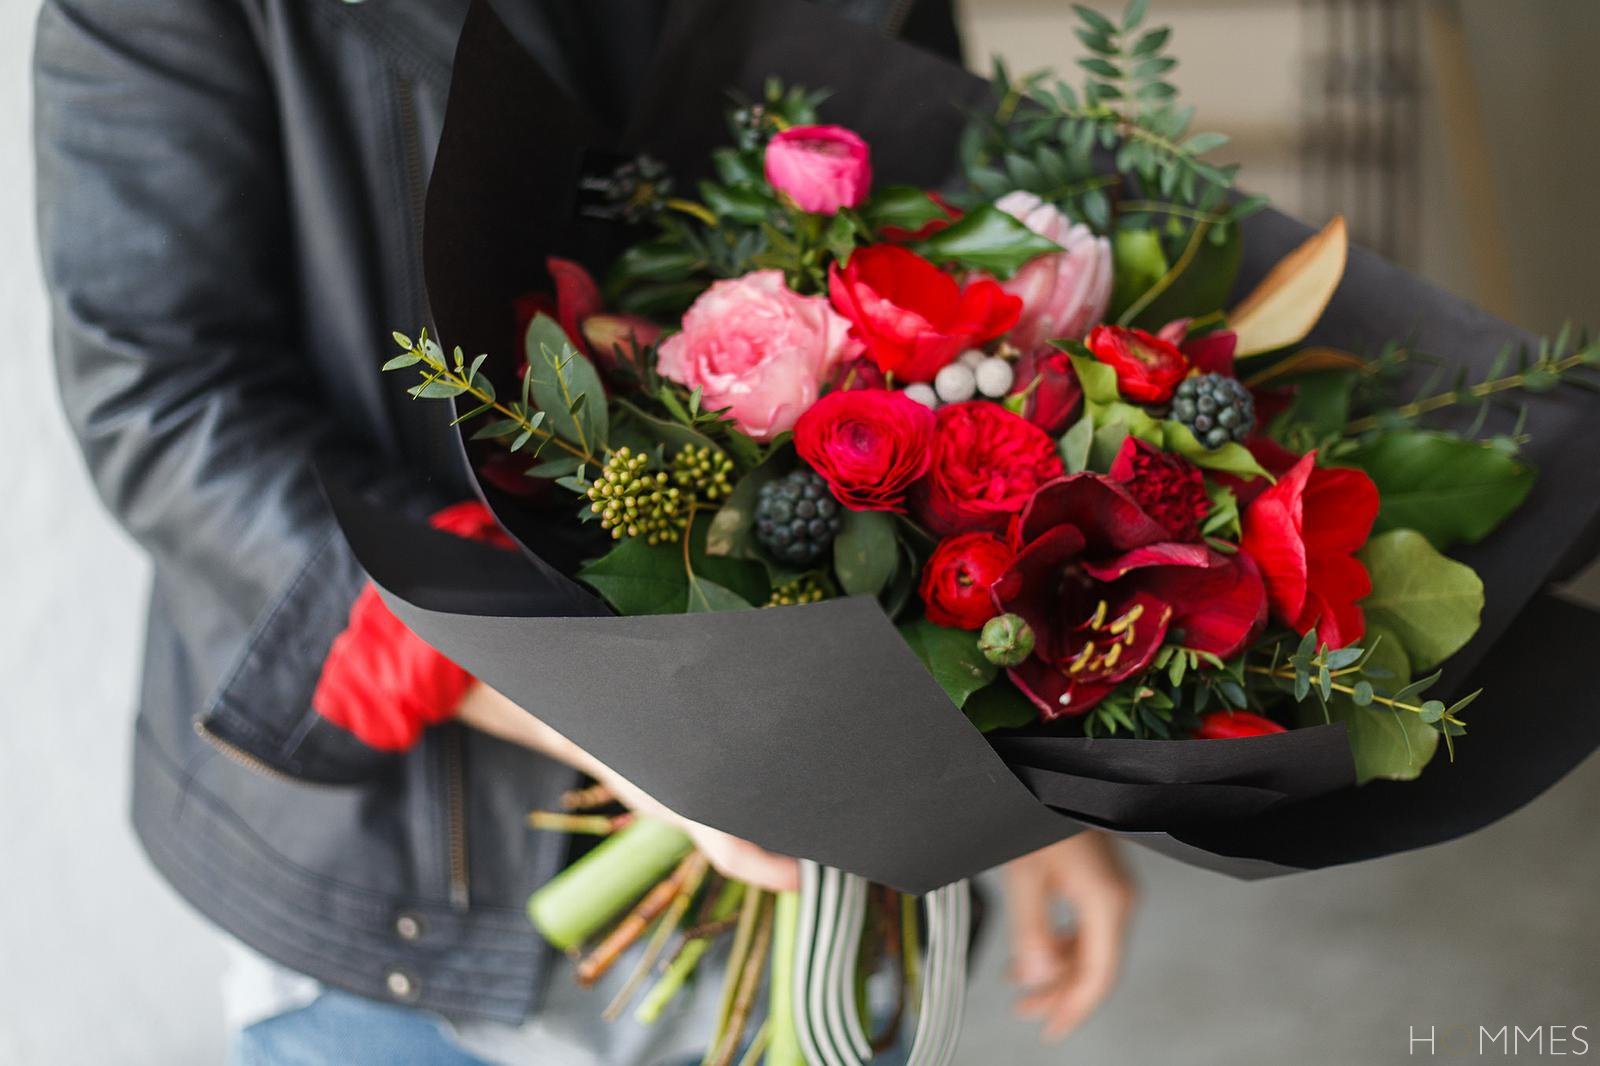 Незабываемые цветы с доставкой в Москве поднимут настроение